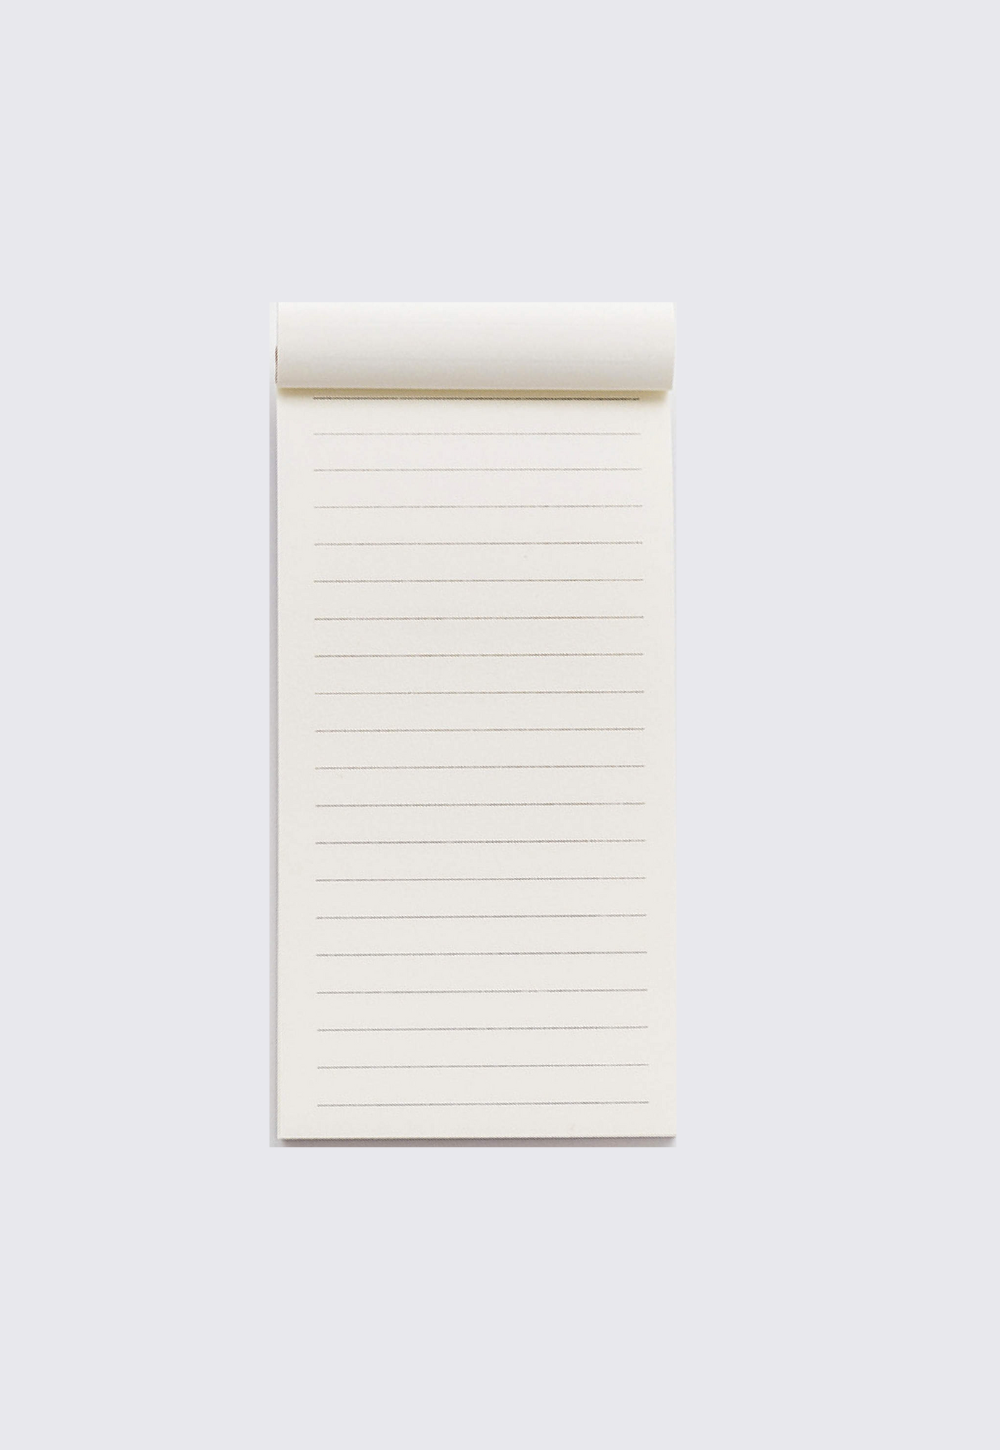 Shopping list notebook